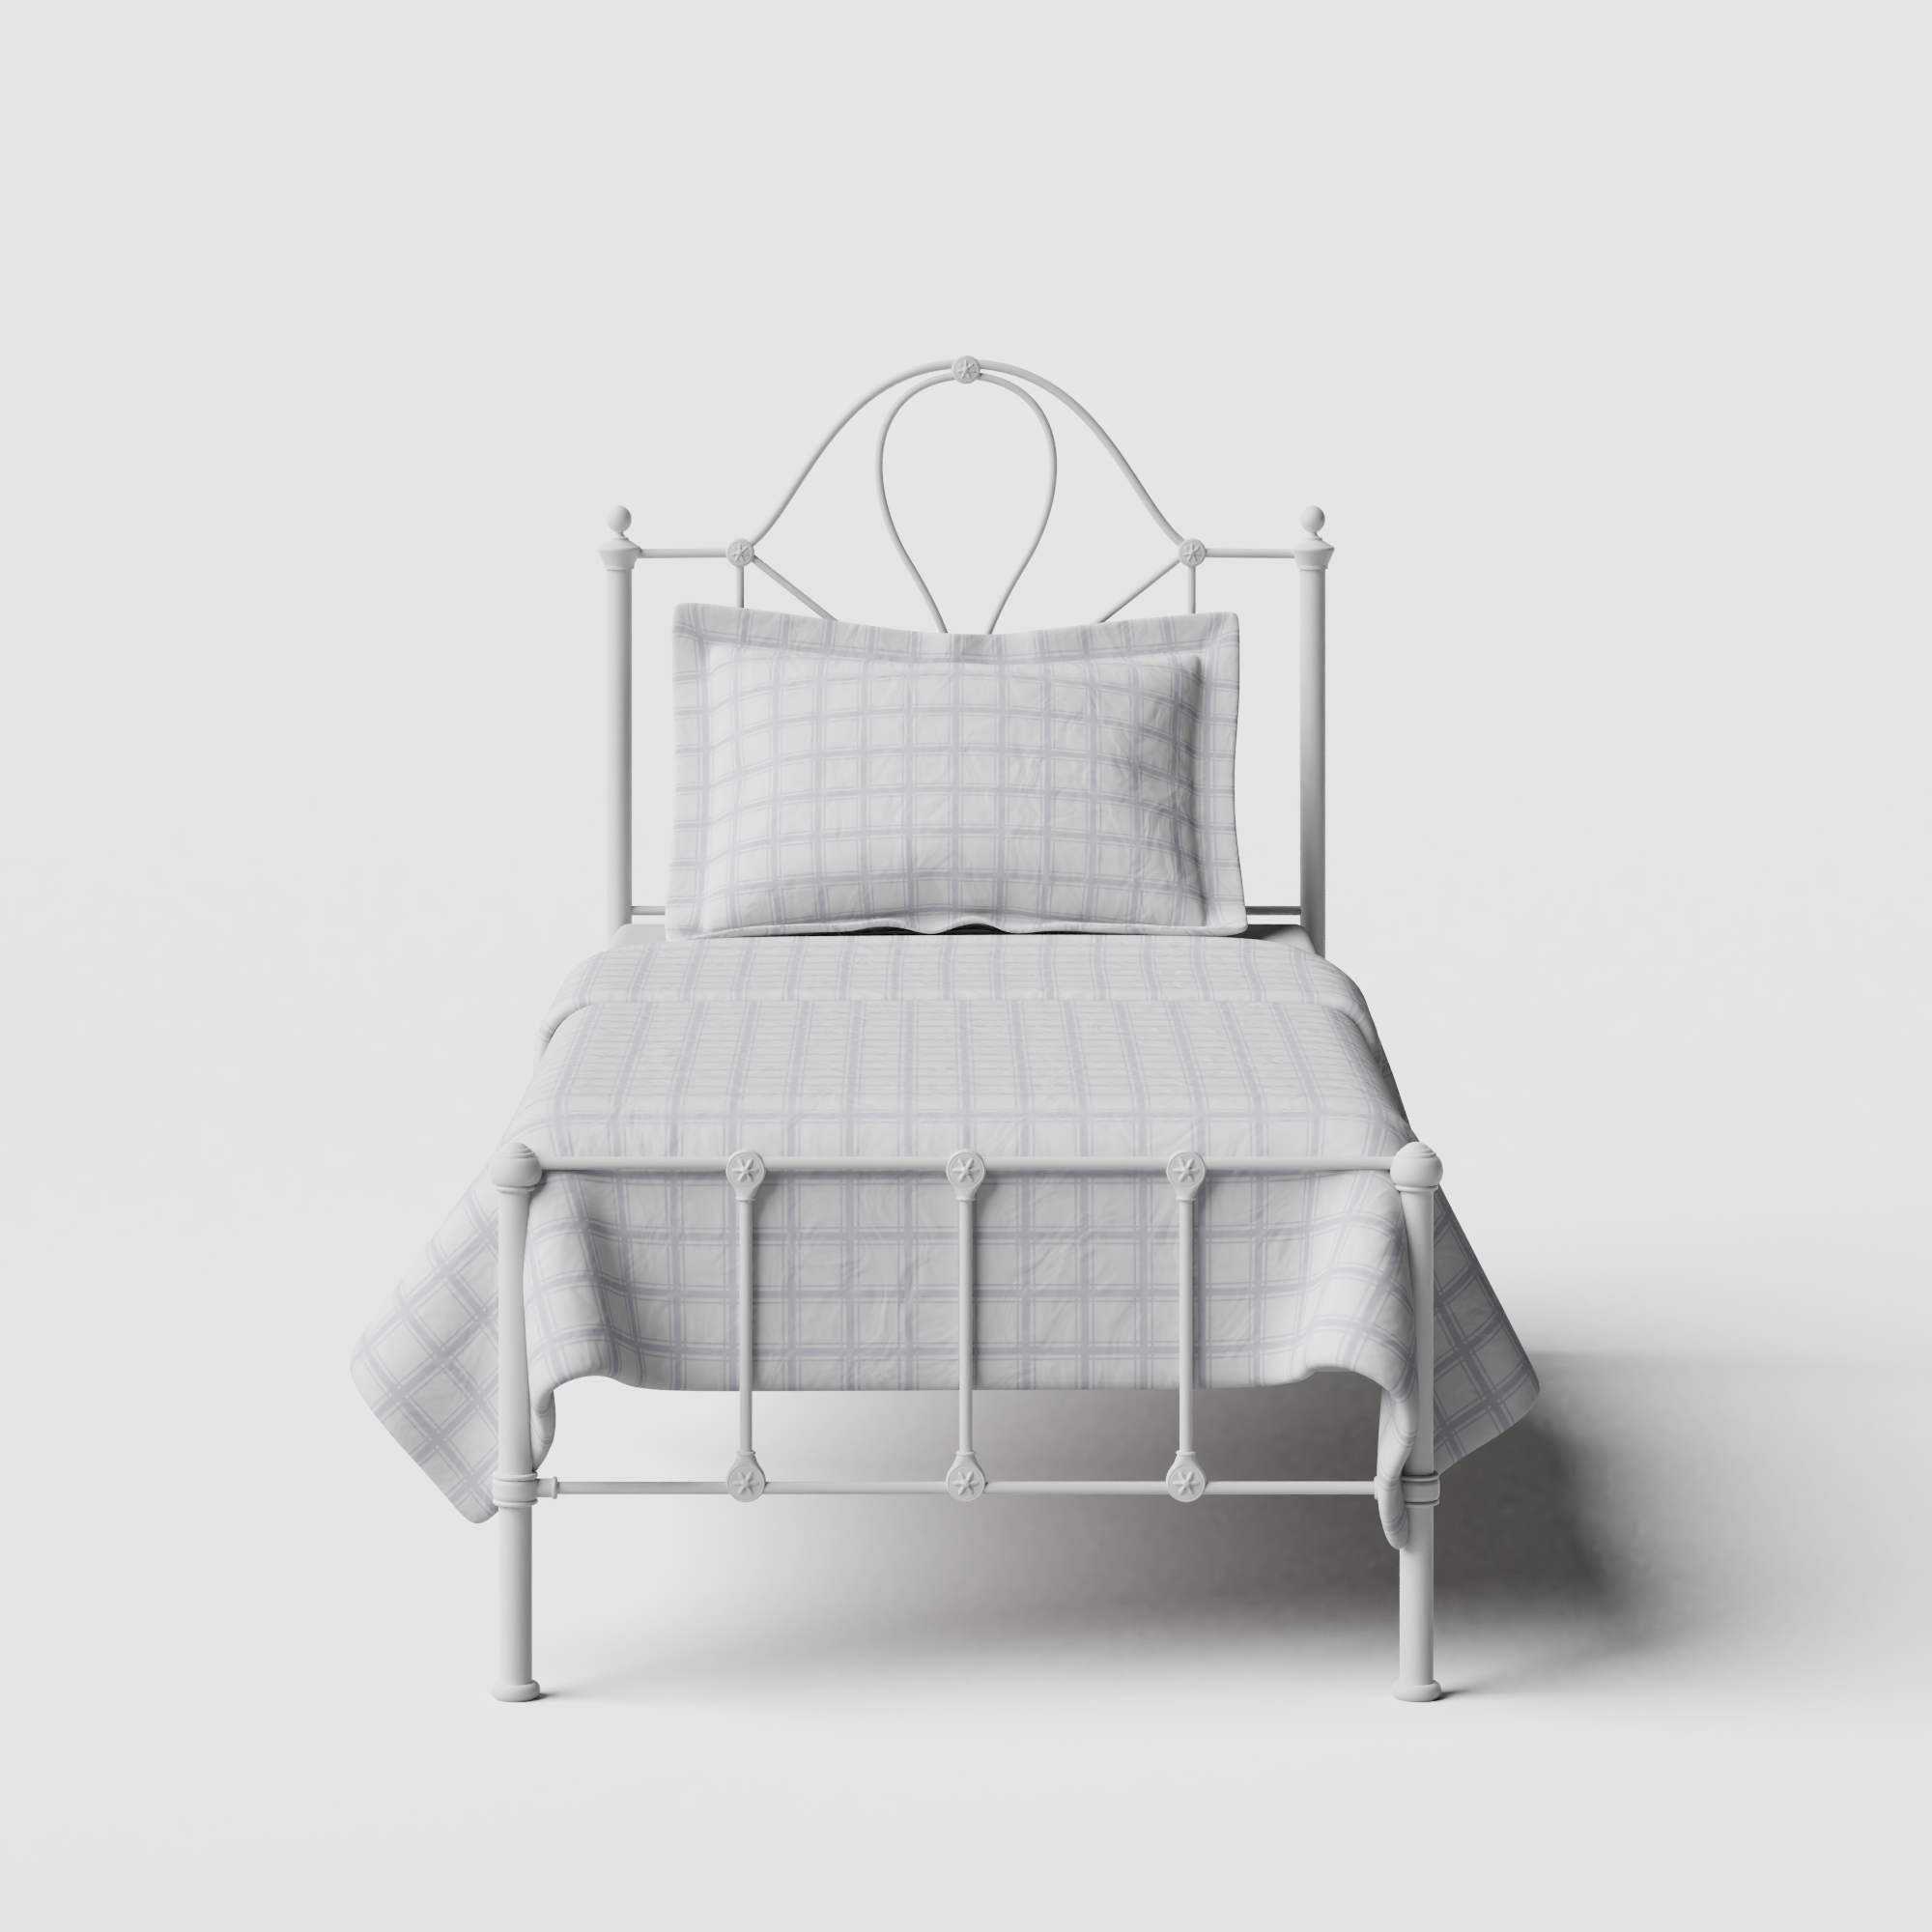 Athena iron/metal single bed in white